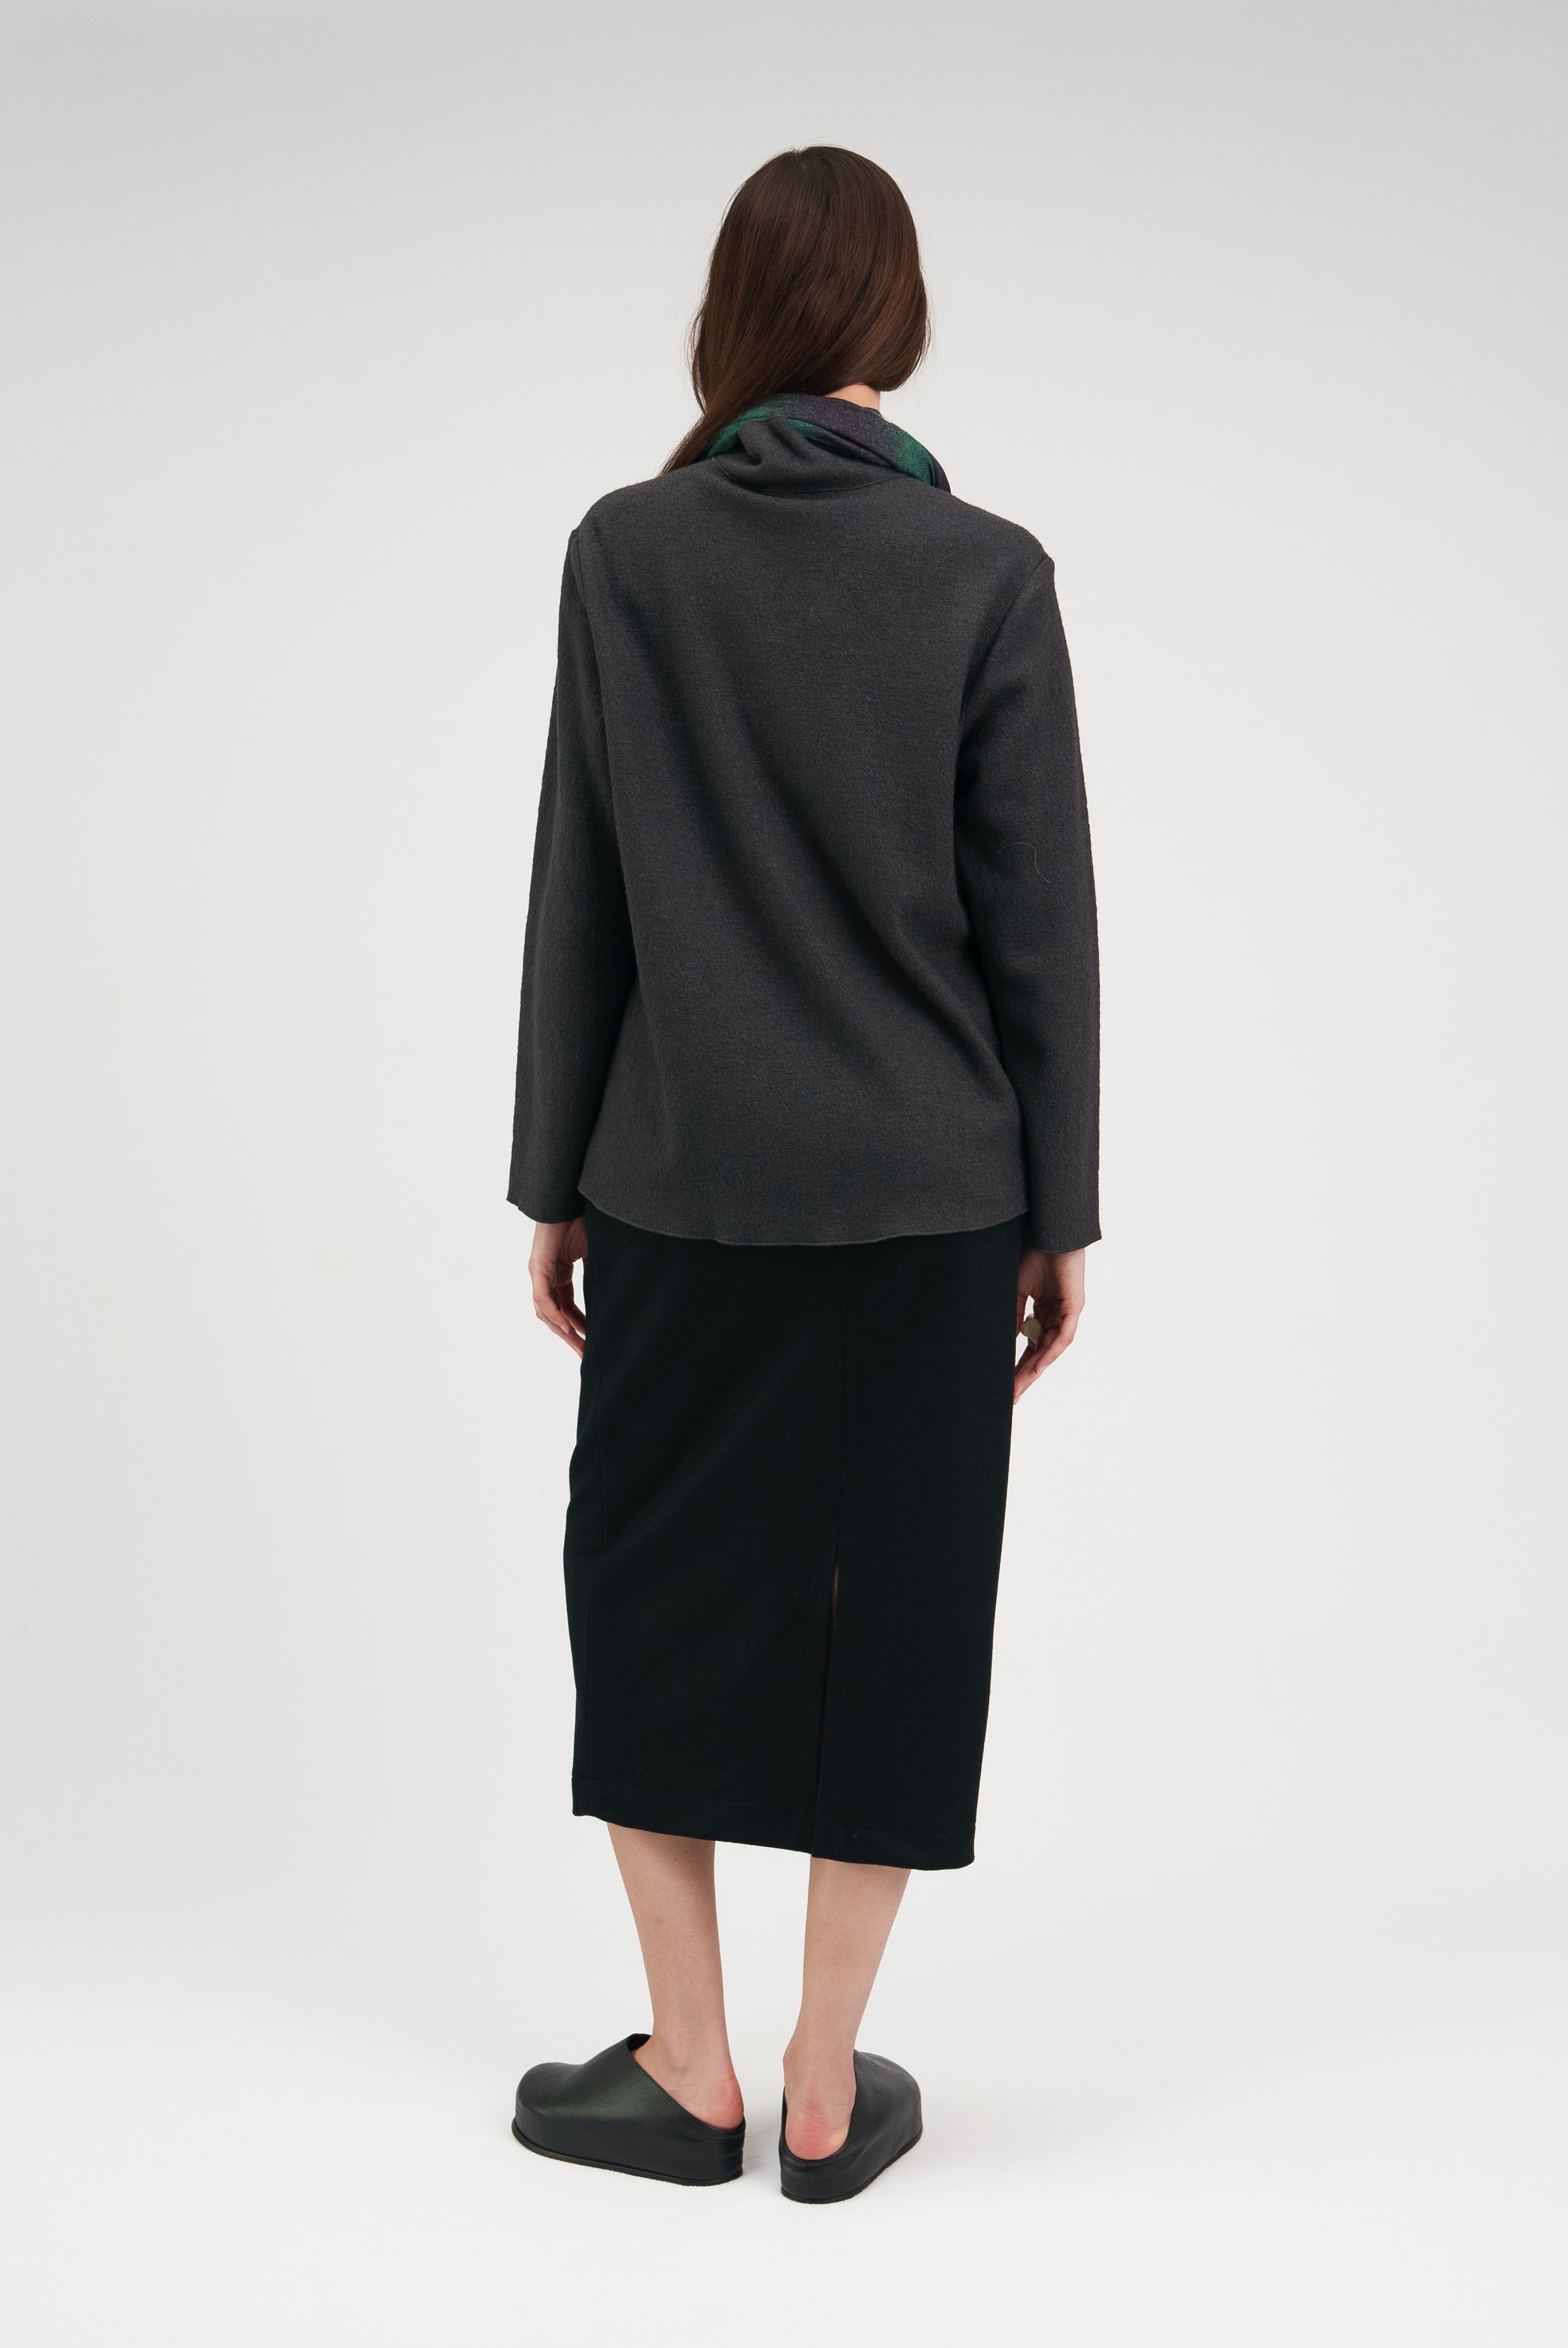 Jersey Skirt in Black Wool Knit